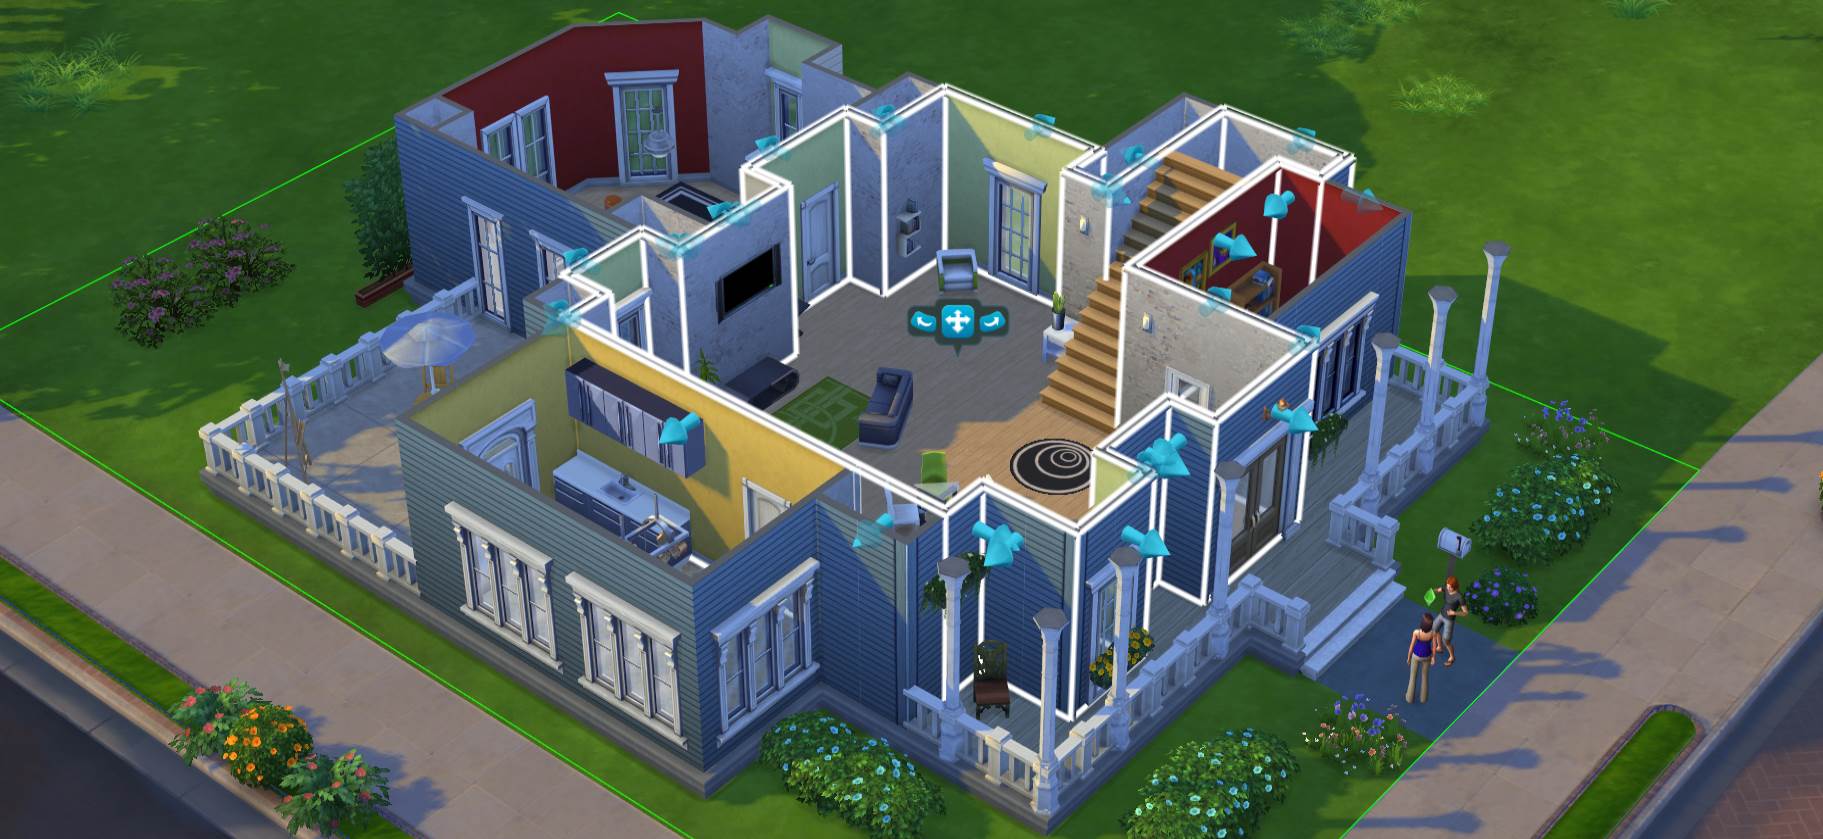 Situs Download Desain Rumah Terbaik The Sims 4